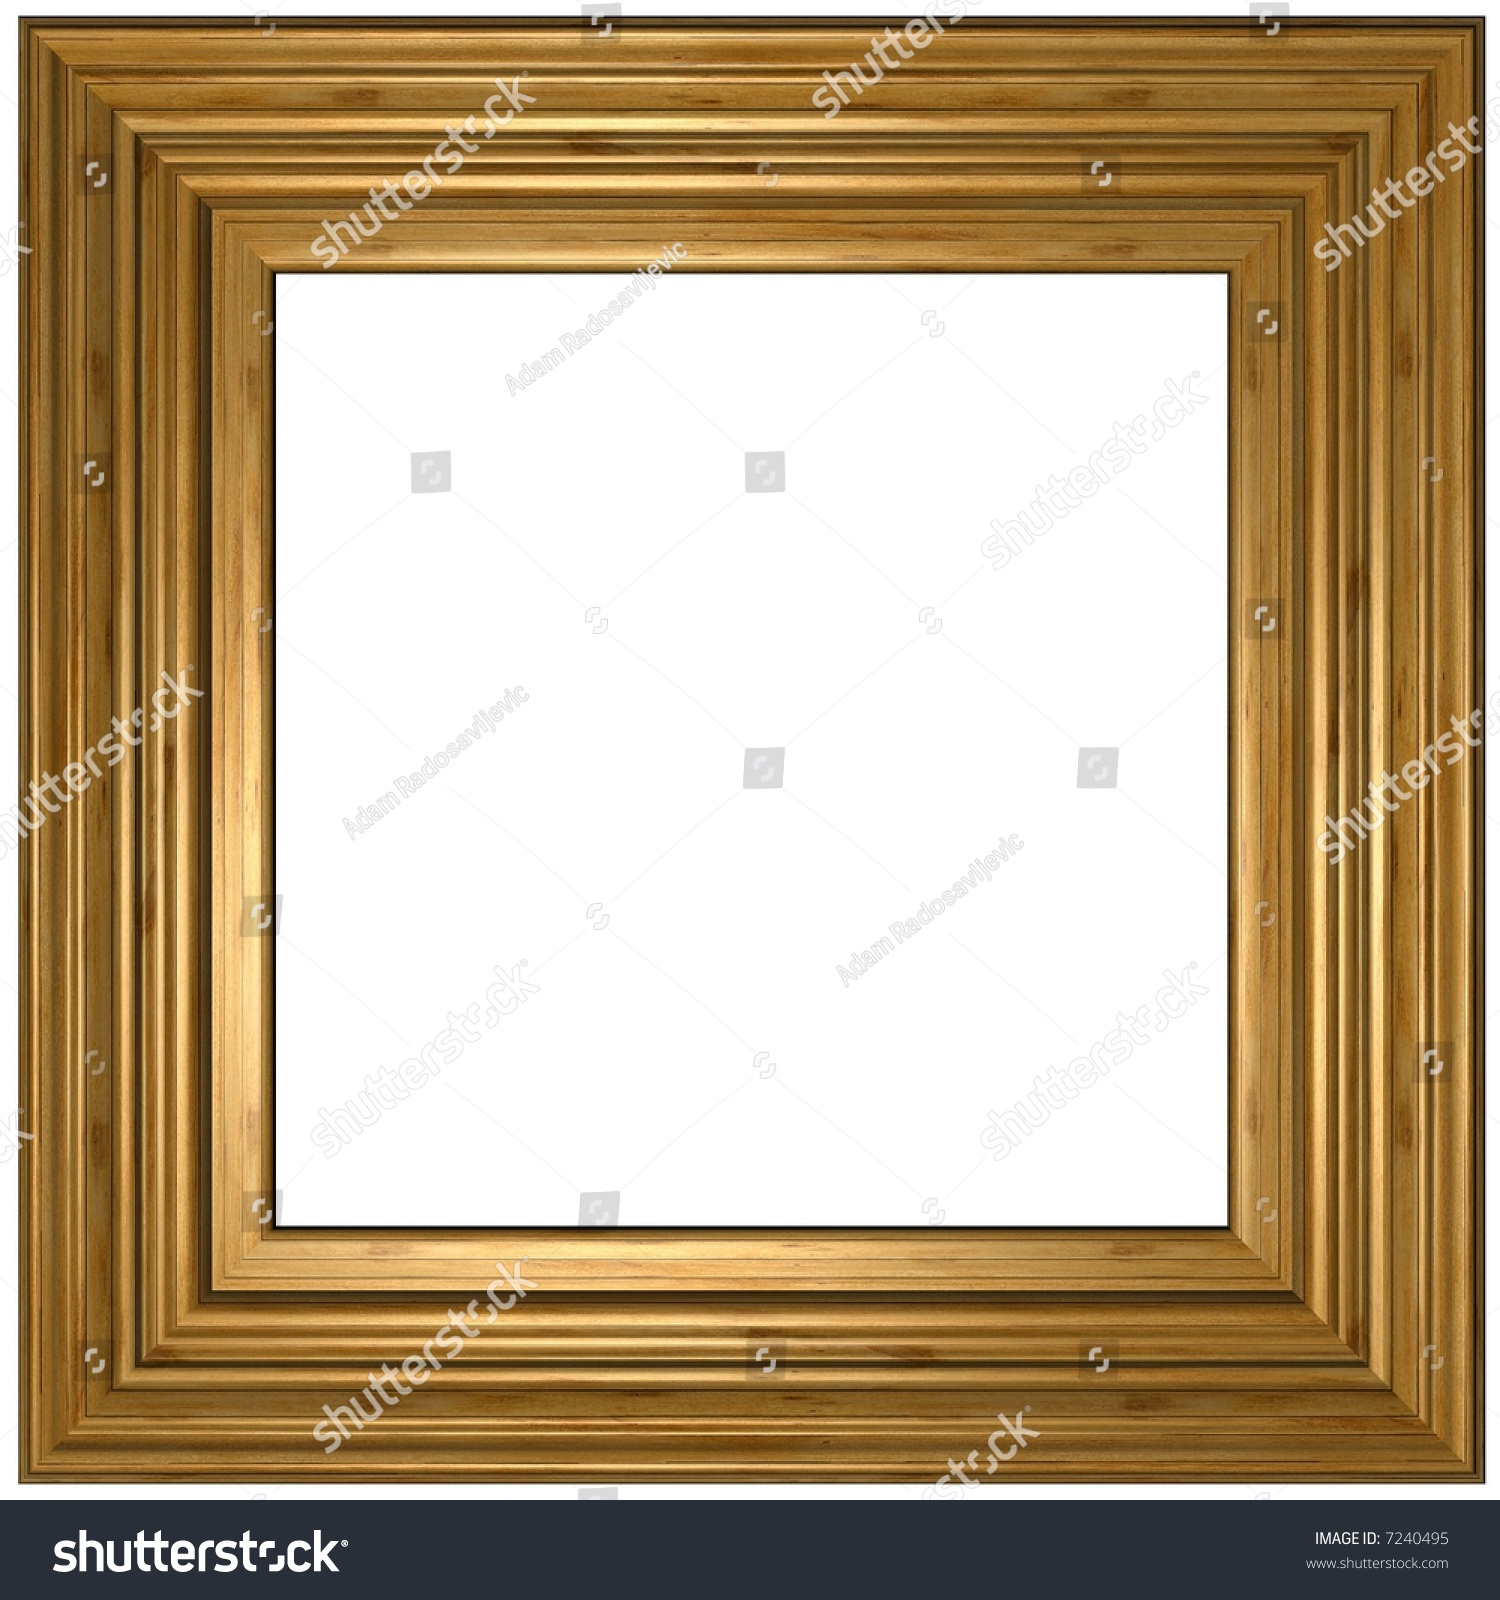 Wooden Frame Stock Photo 7240495 : Shutterstock